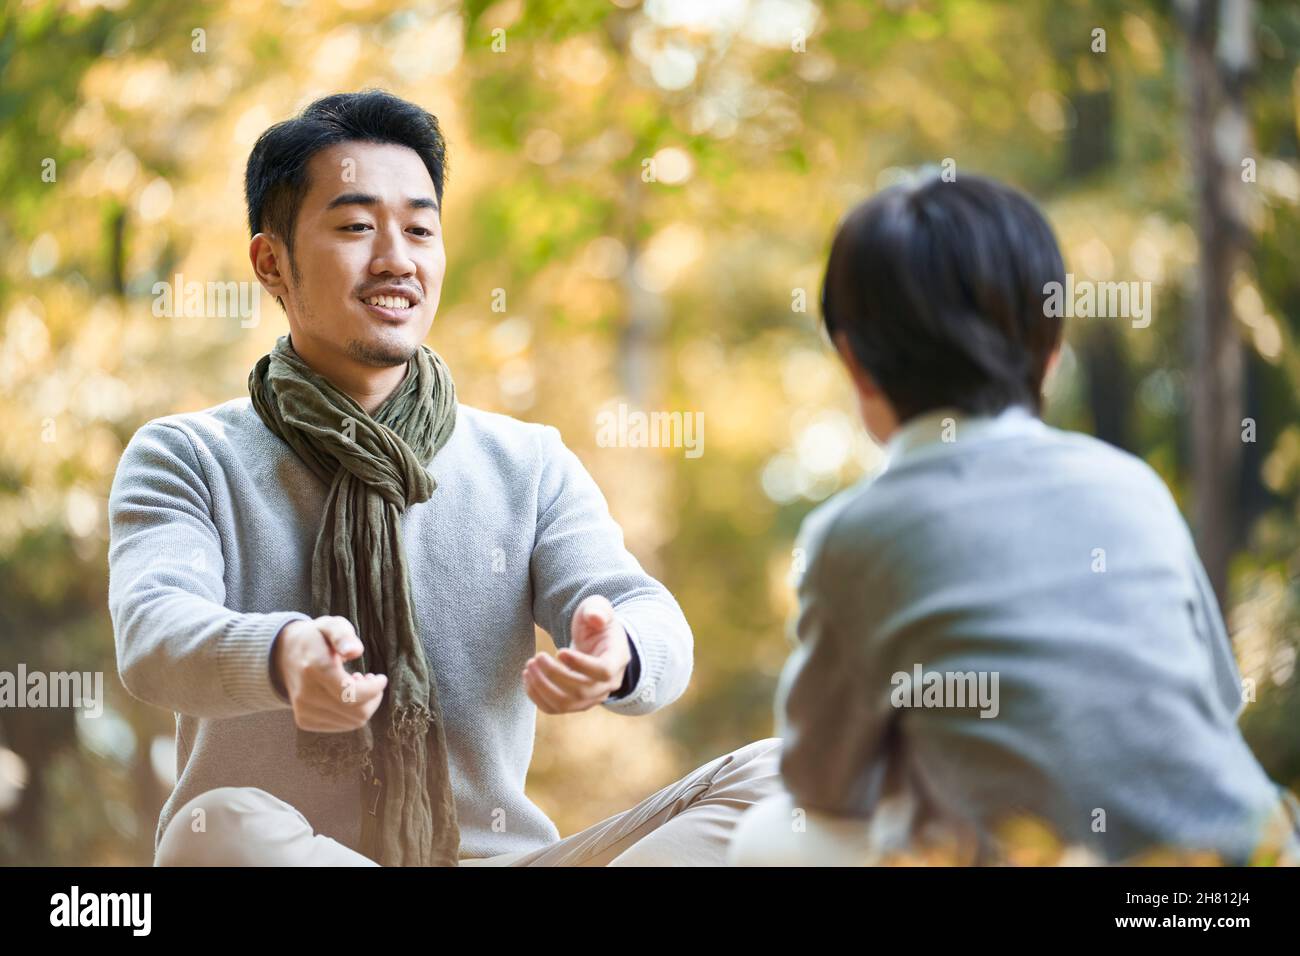 padre asiático e hijo sentado en el césped teniendo una agradable conversación al aire libre en el parque Foto de stock